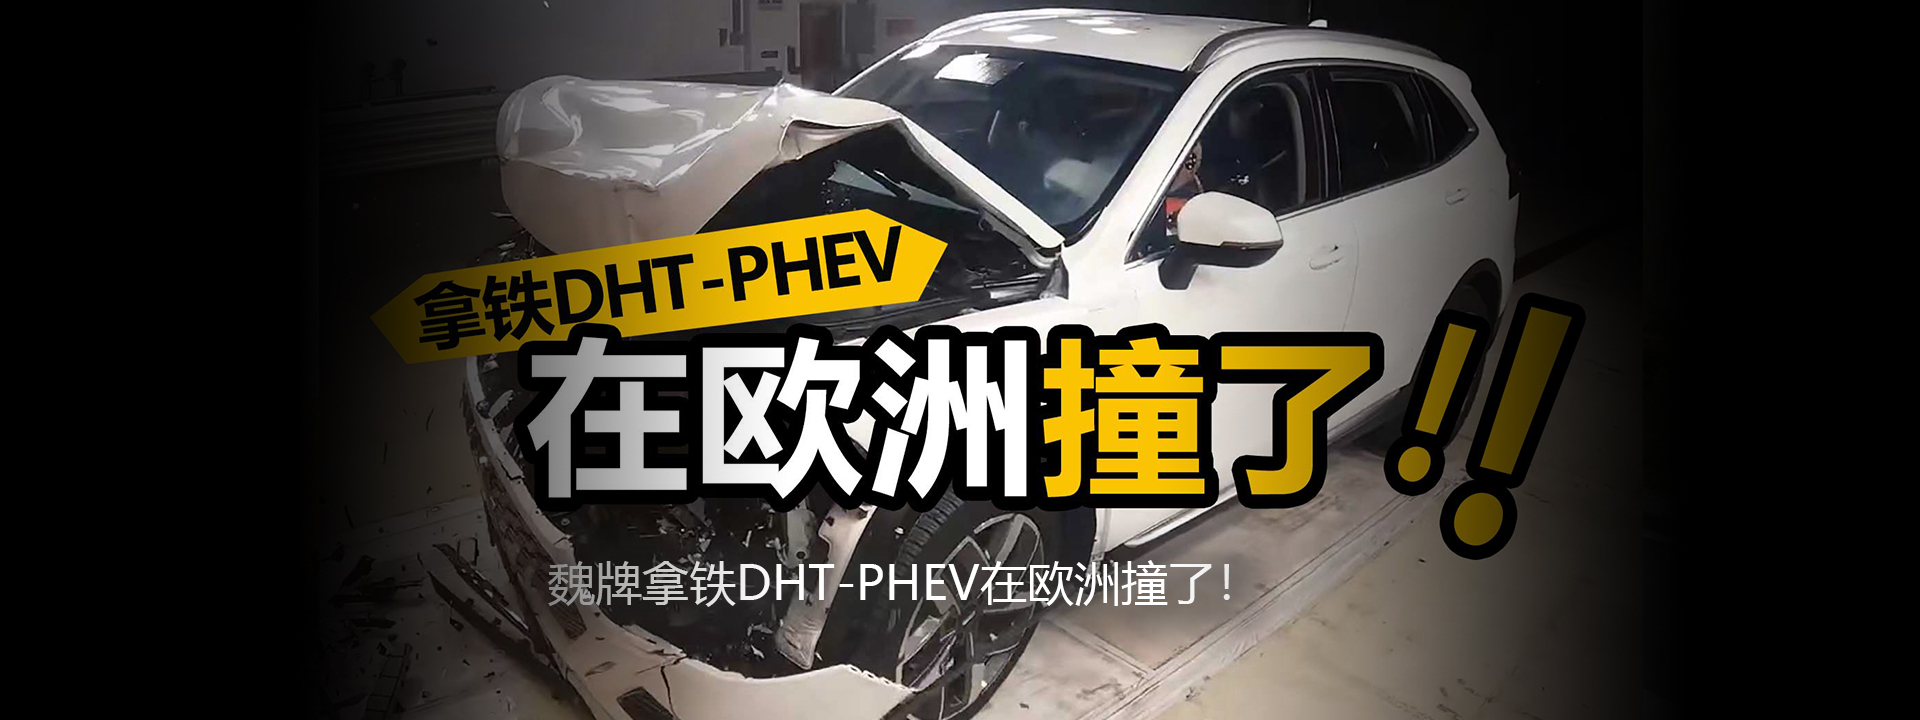 魏牌拿铁DHT-PHEV在欧洲撞了！